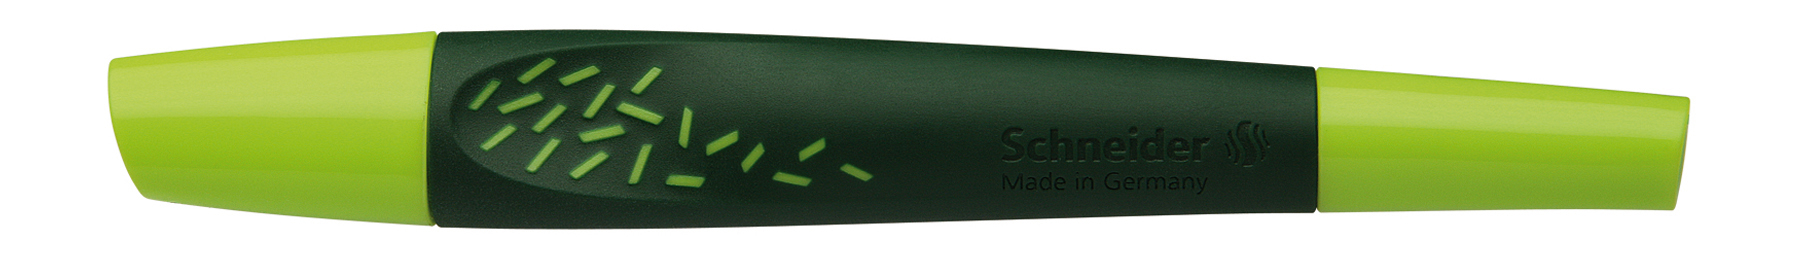 SCHNEIDER Rollerball Pen Breeze 0.5mm 188804 noir/vert